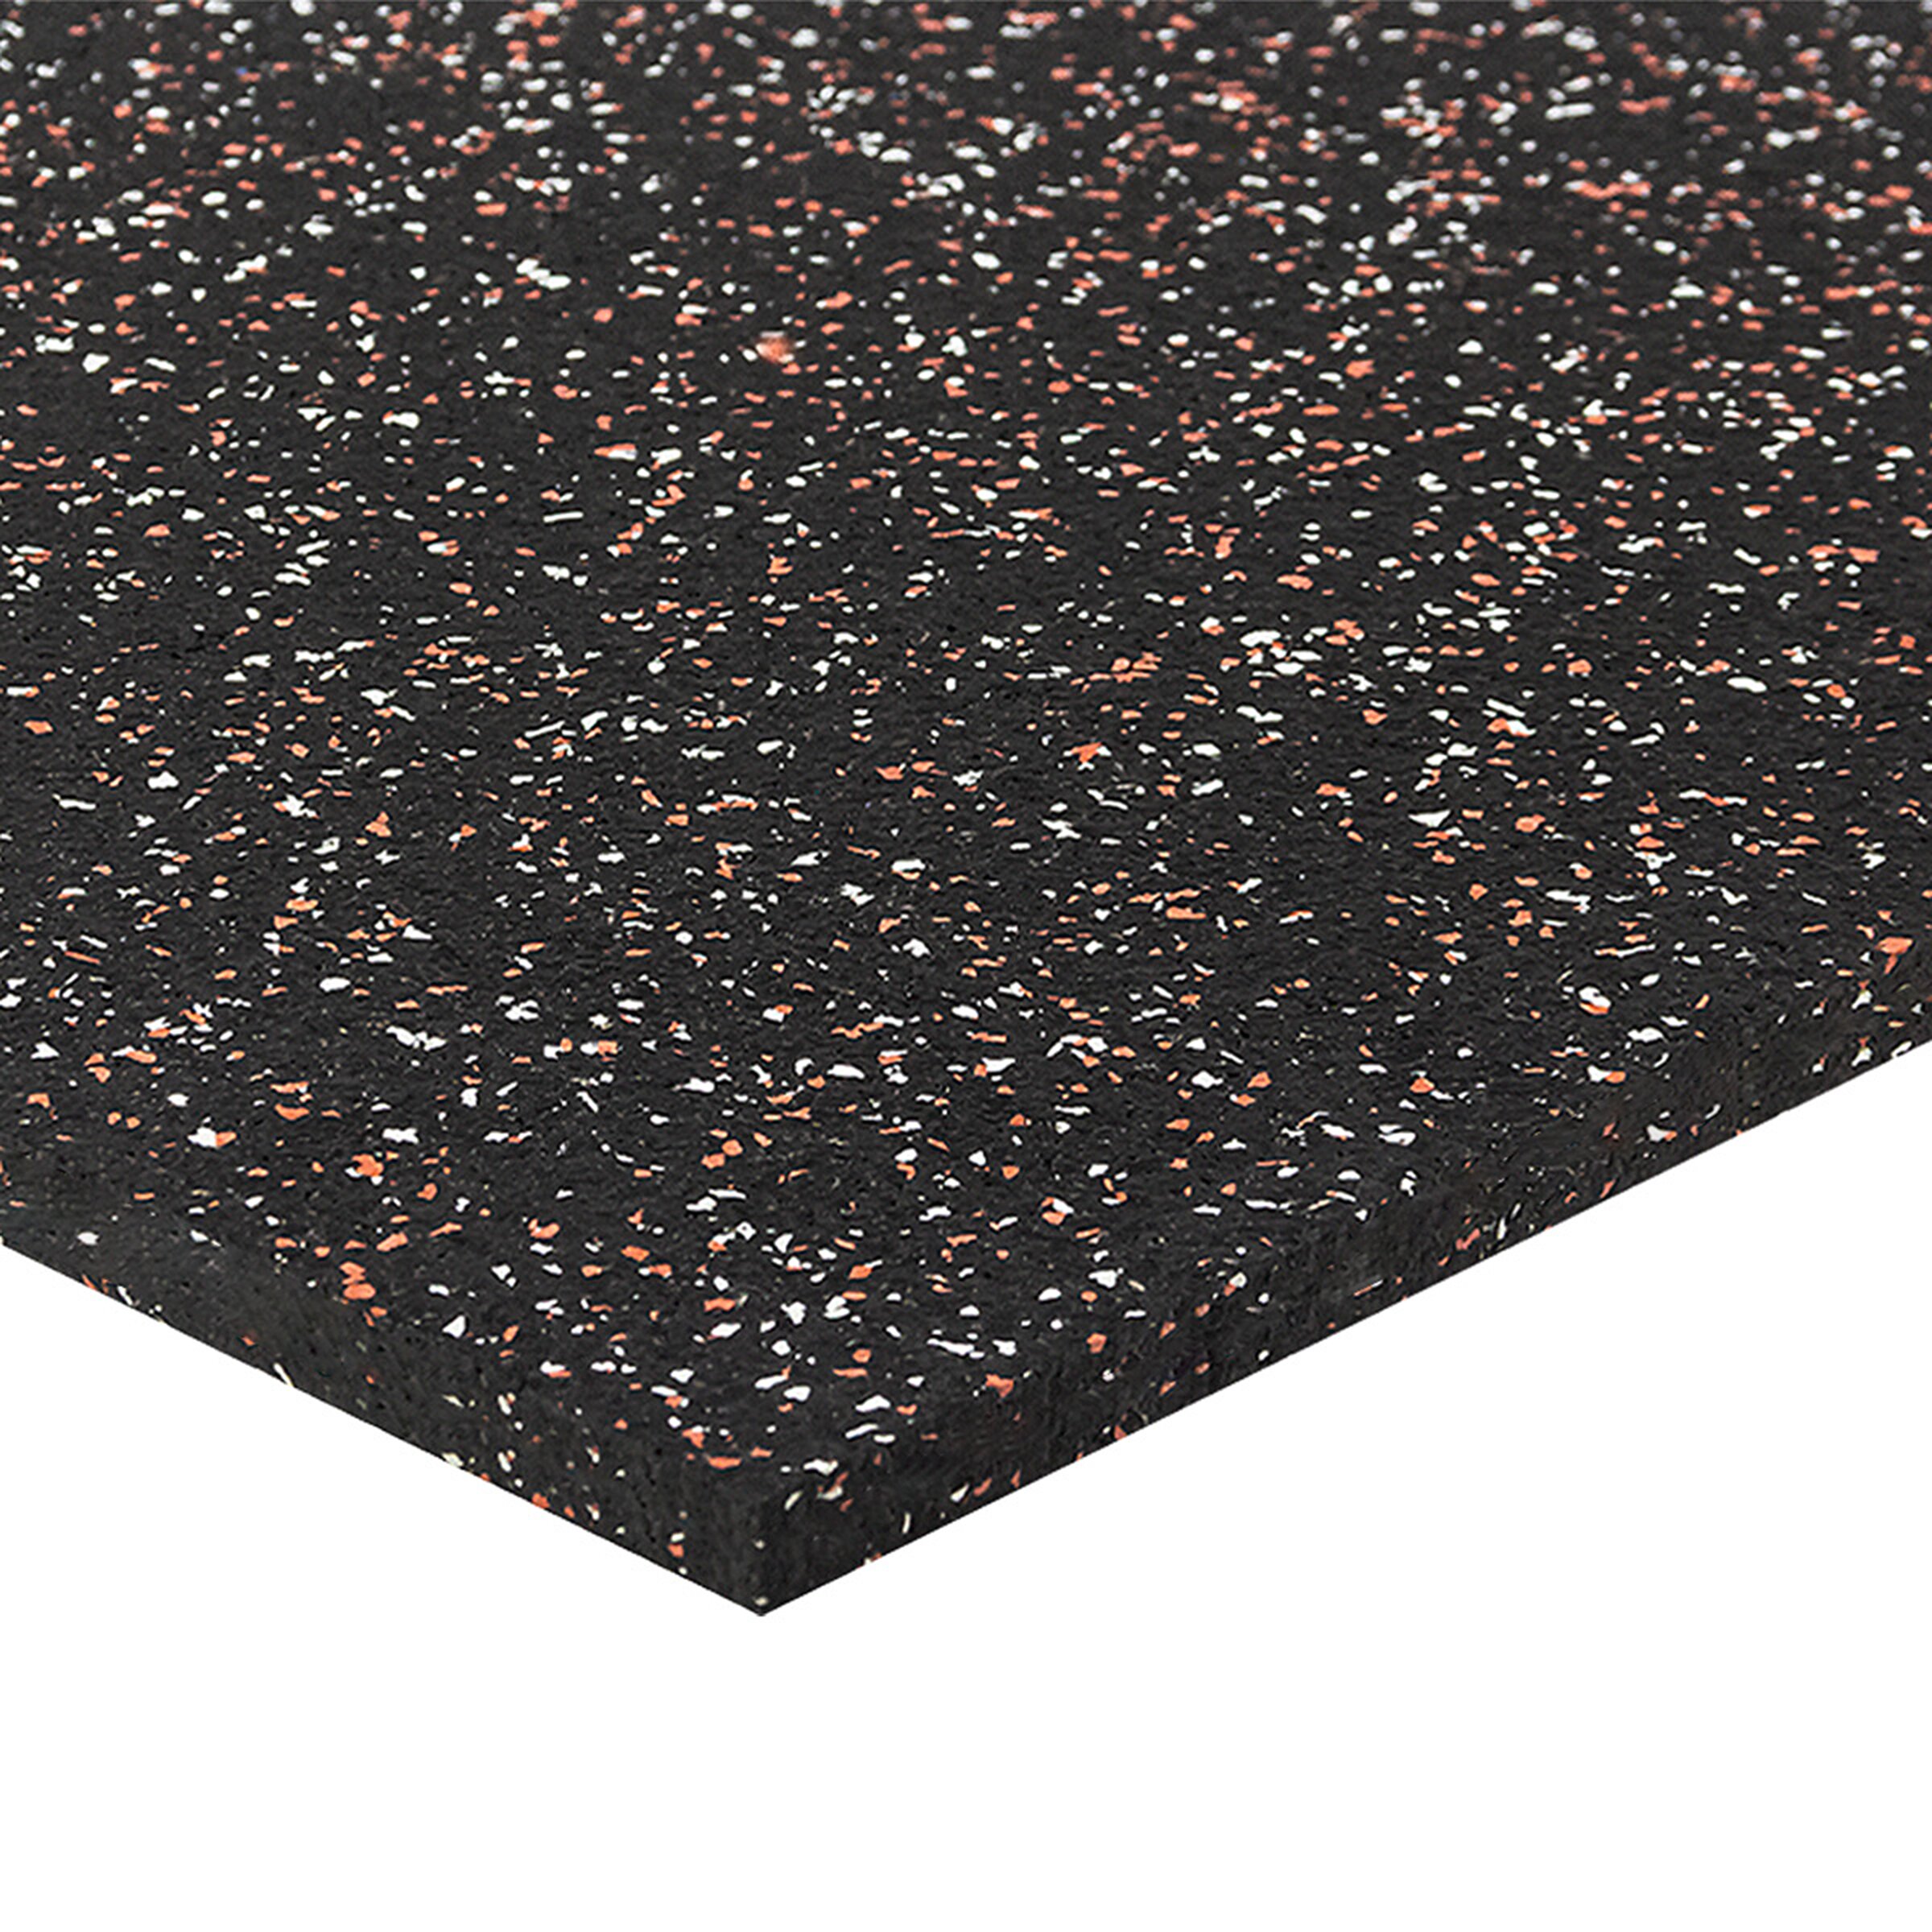 Černo-bílo-červená podlahová guma FLOMA FitFlo SF1050 - délka 100 cm, šířka 100 cm, výška 1,6 cm